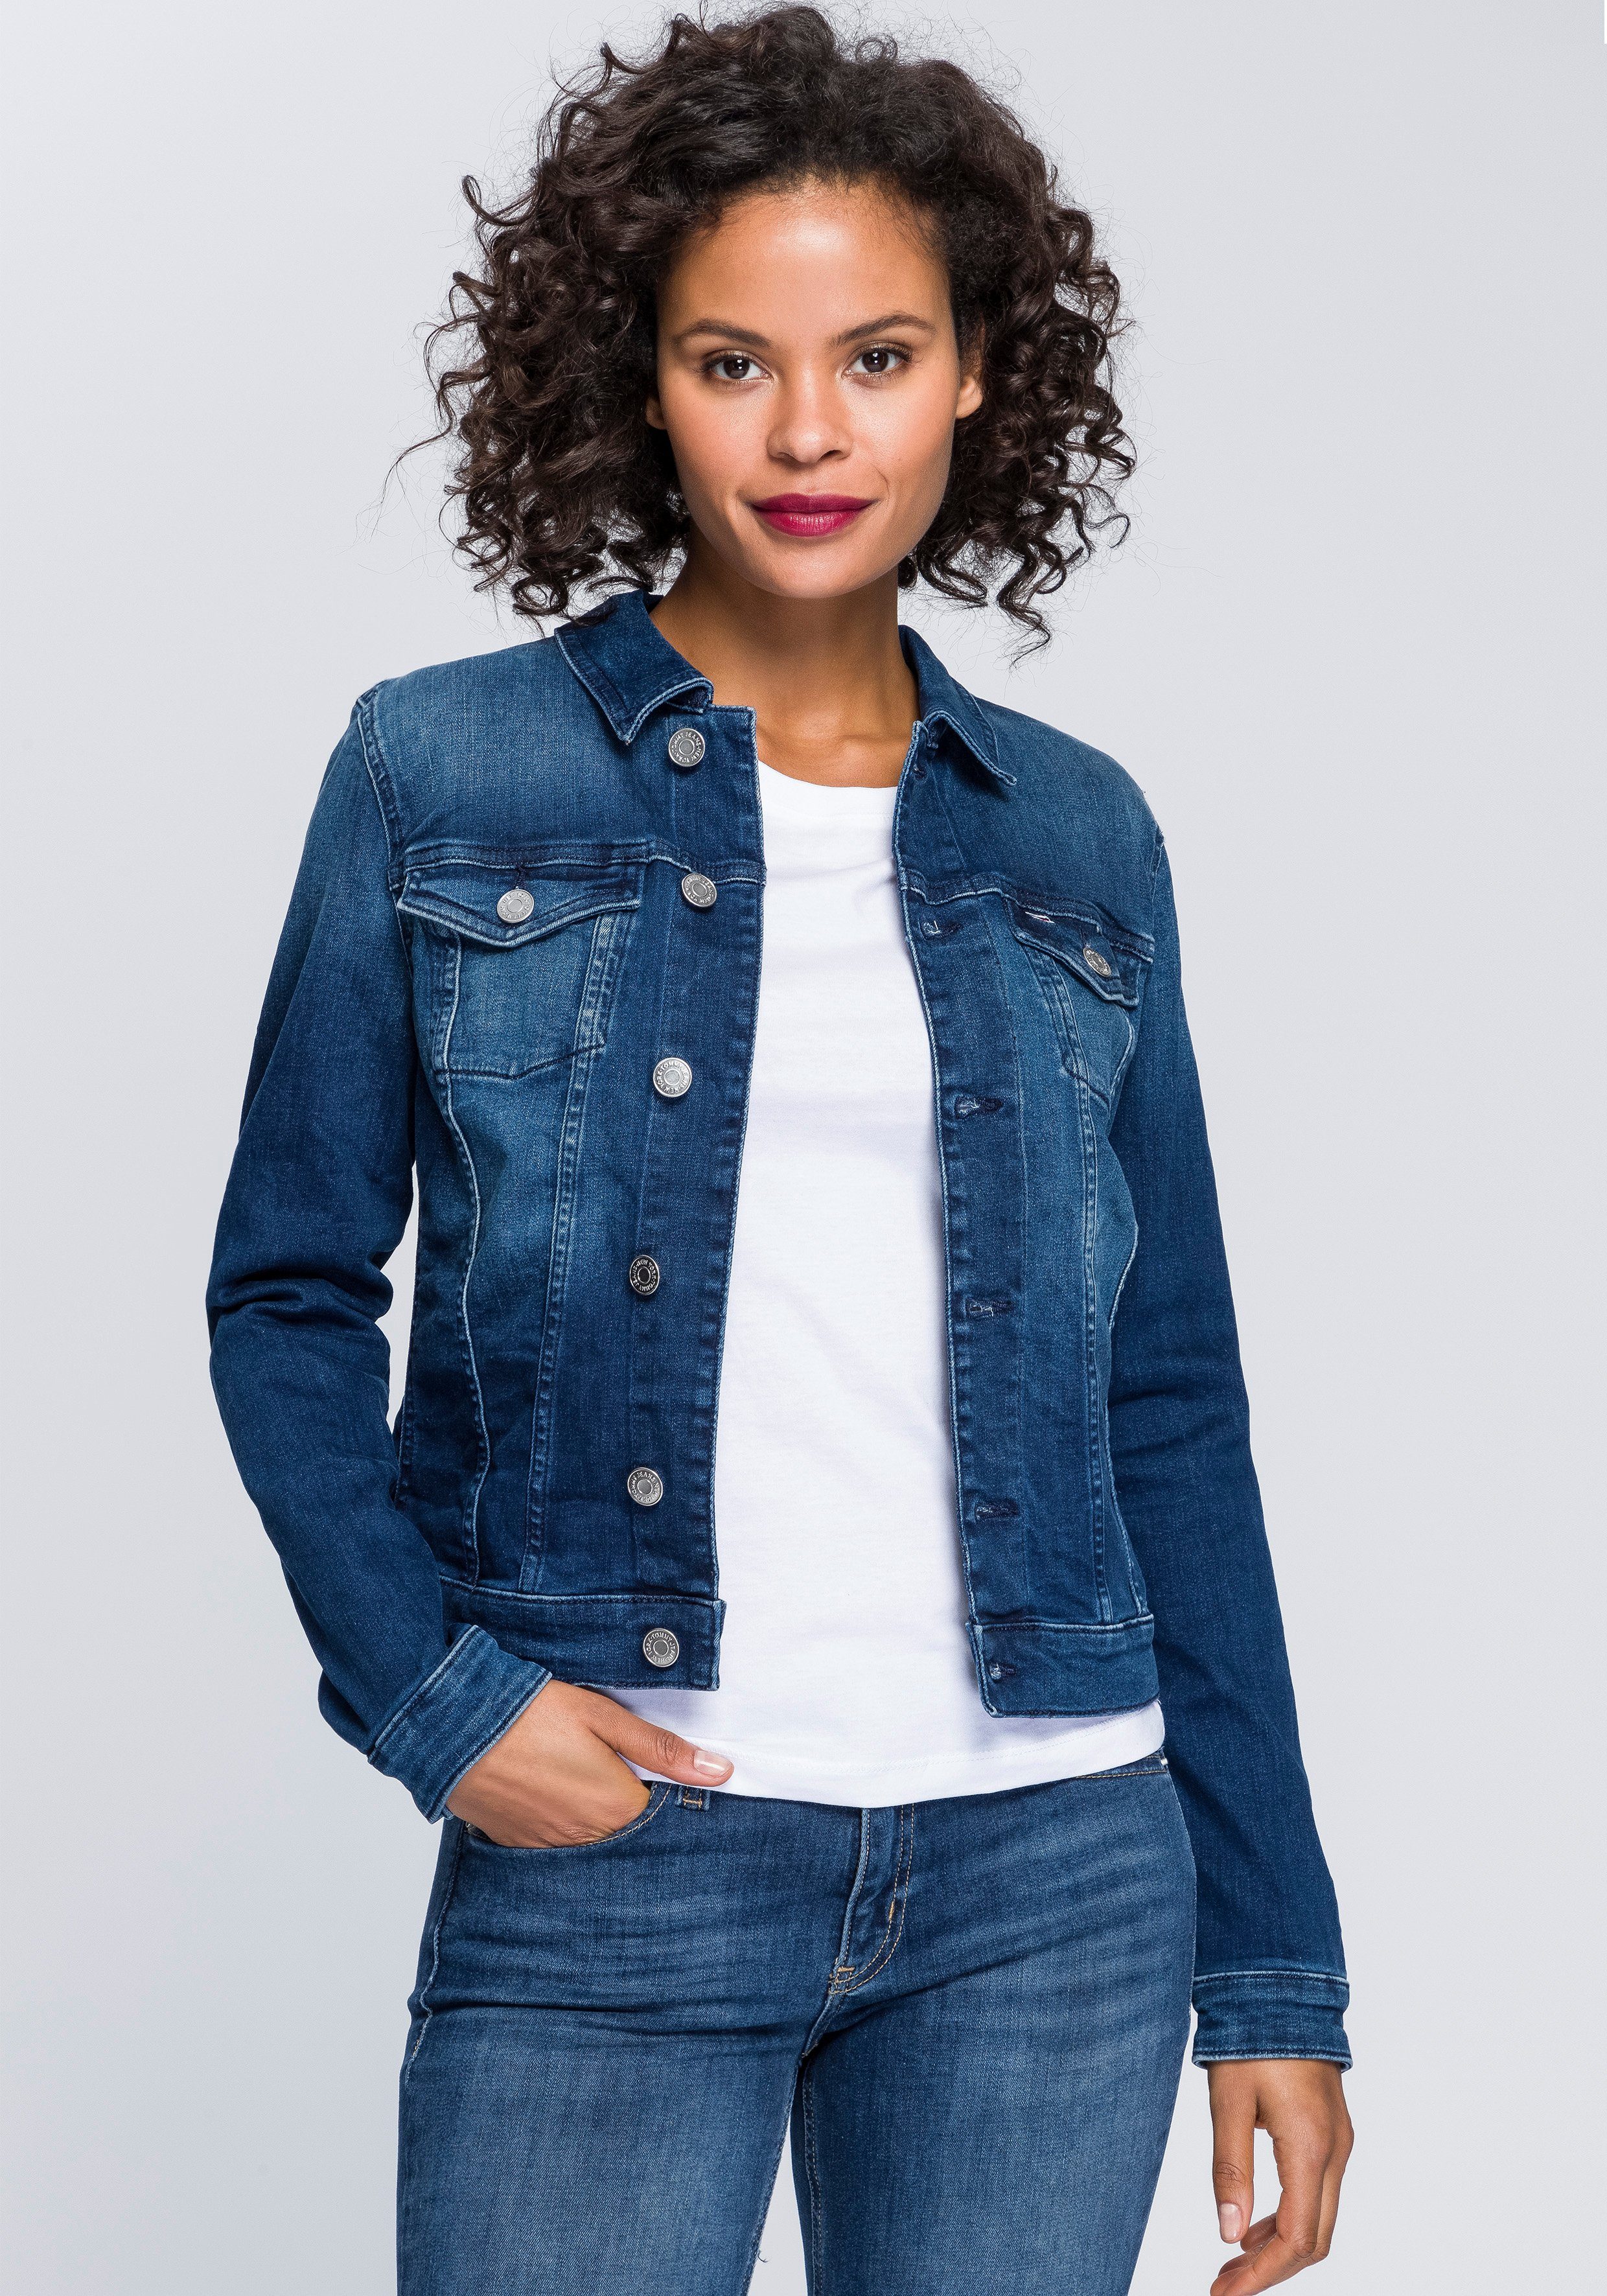 Blaue Jeansjacke online kaufen | OTTO